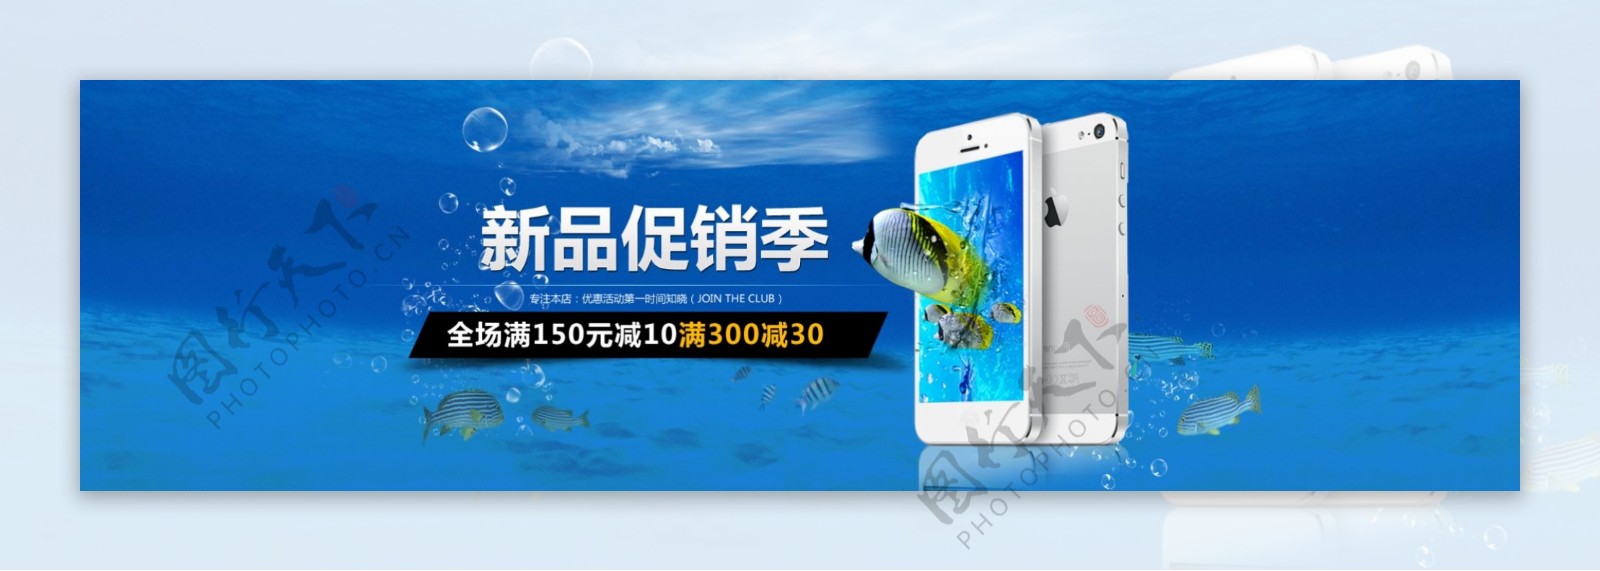 苹果手机促销季海报数码产品夏季清凉促销季